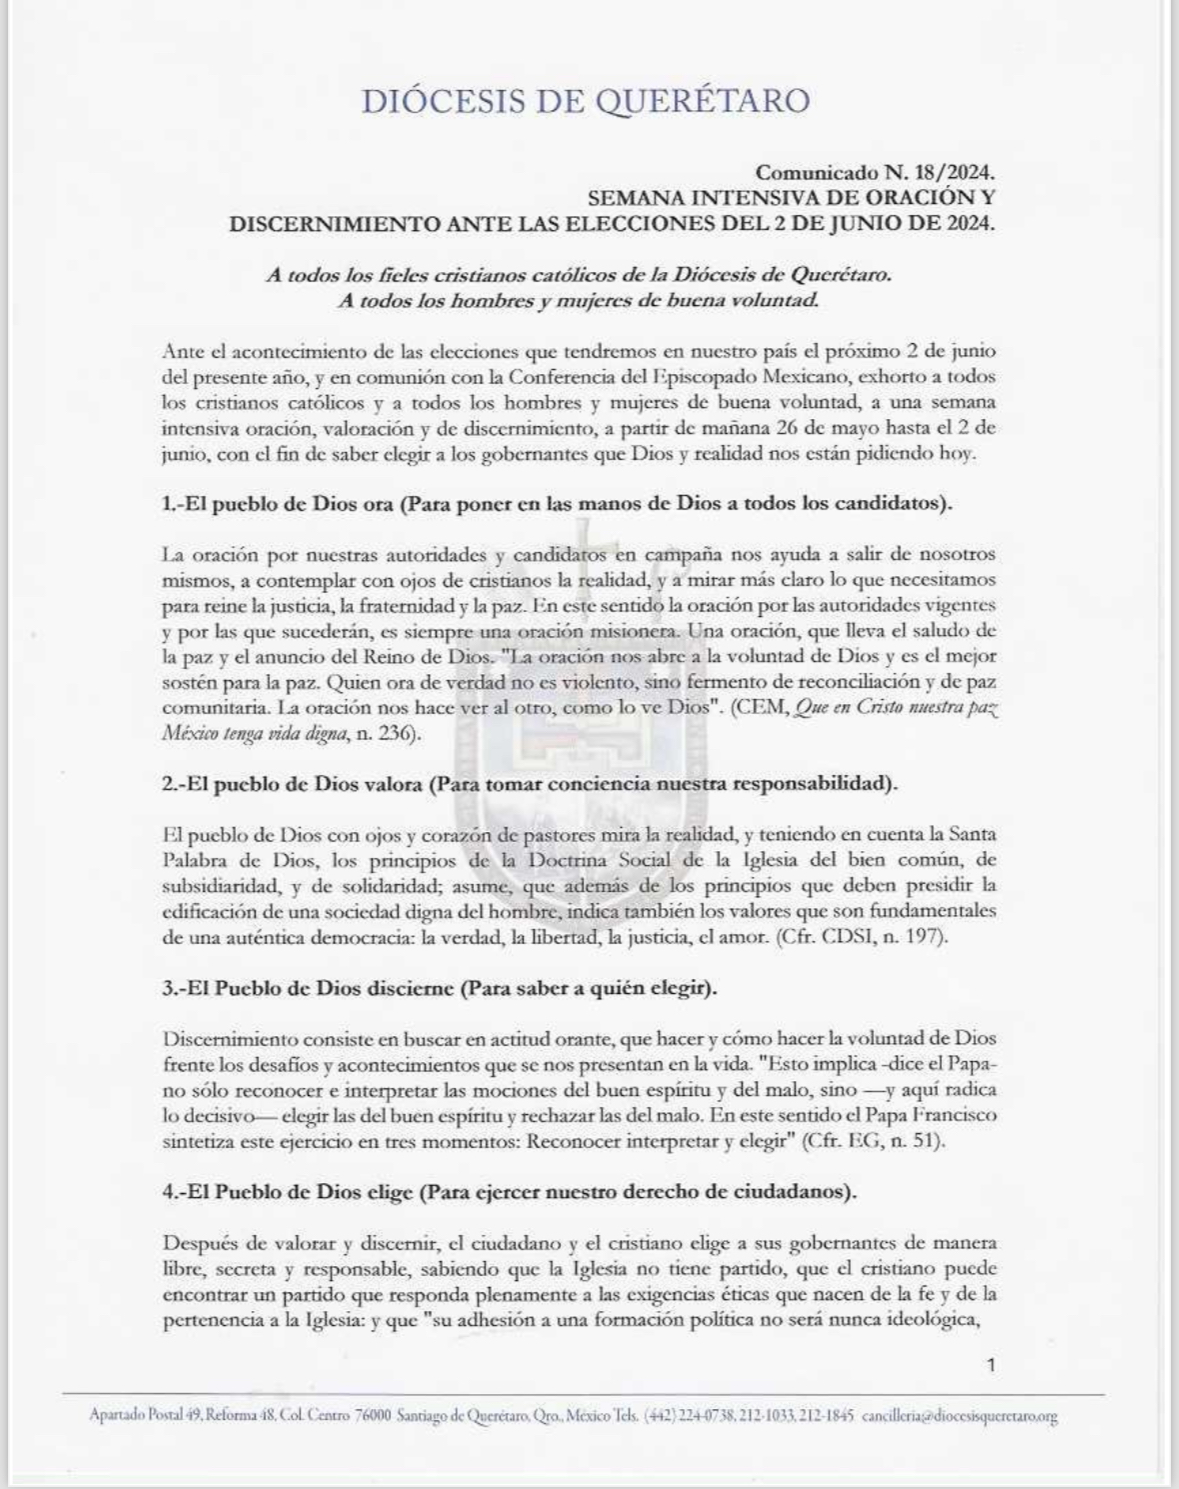 SEMANA INTENSIVA DE ORACIÓN Y DISCERNIMIENTO ANTE LAS ELECCIONES DEL 2 DE JUNIO DE 2024.